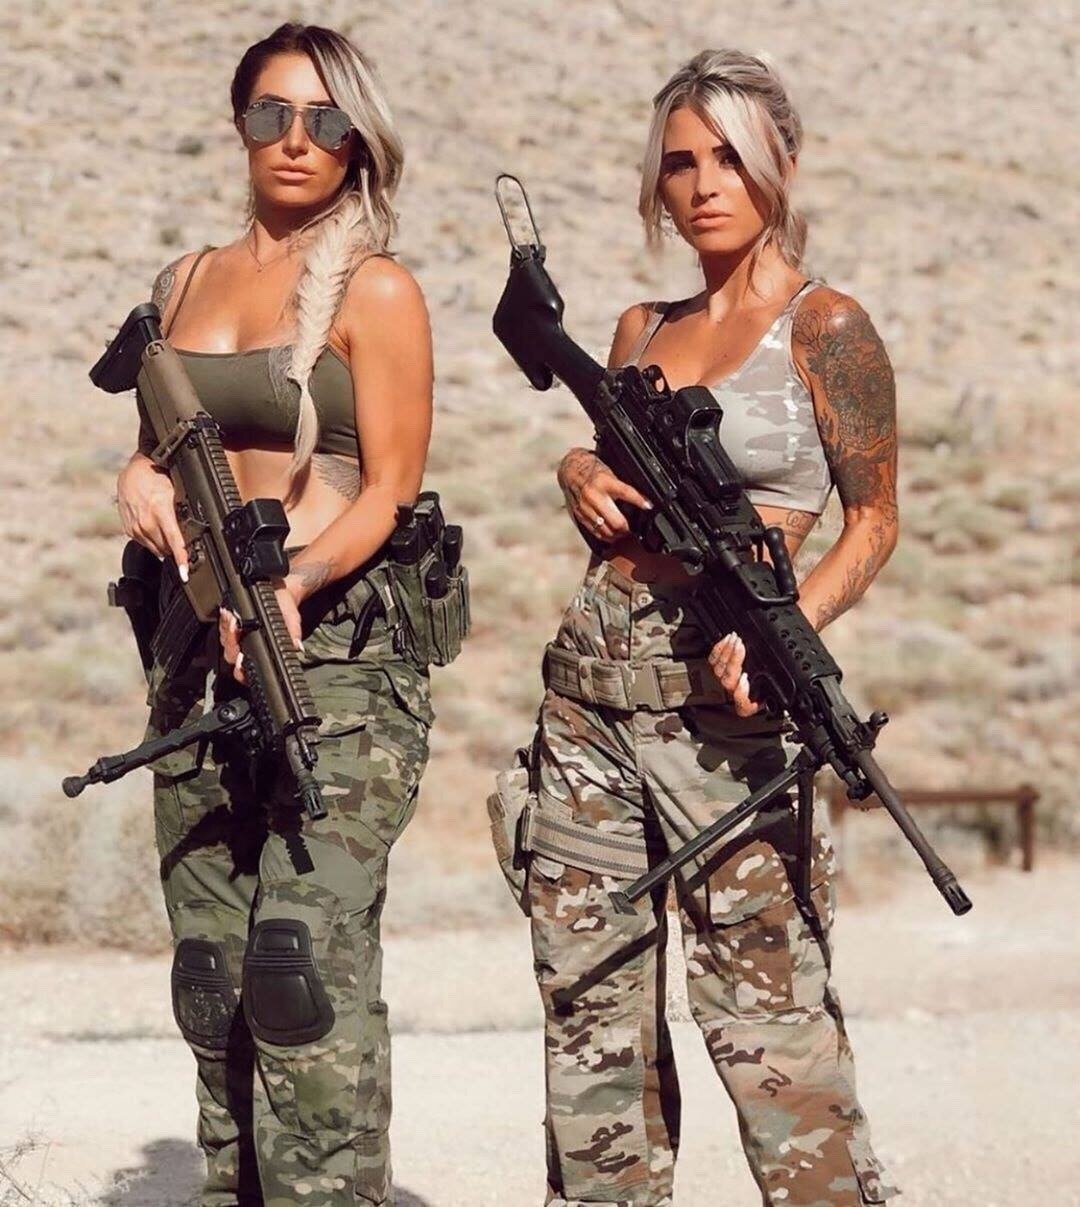 Hot military girls